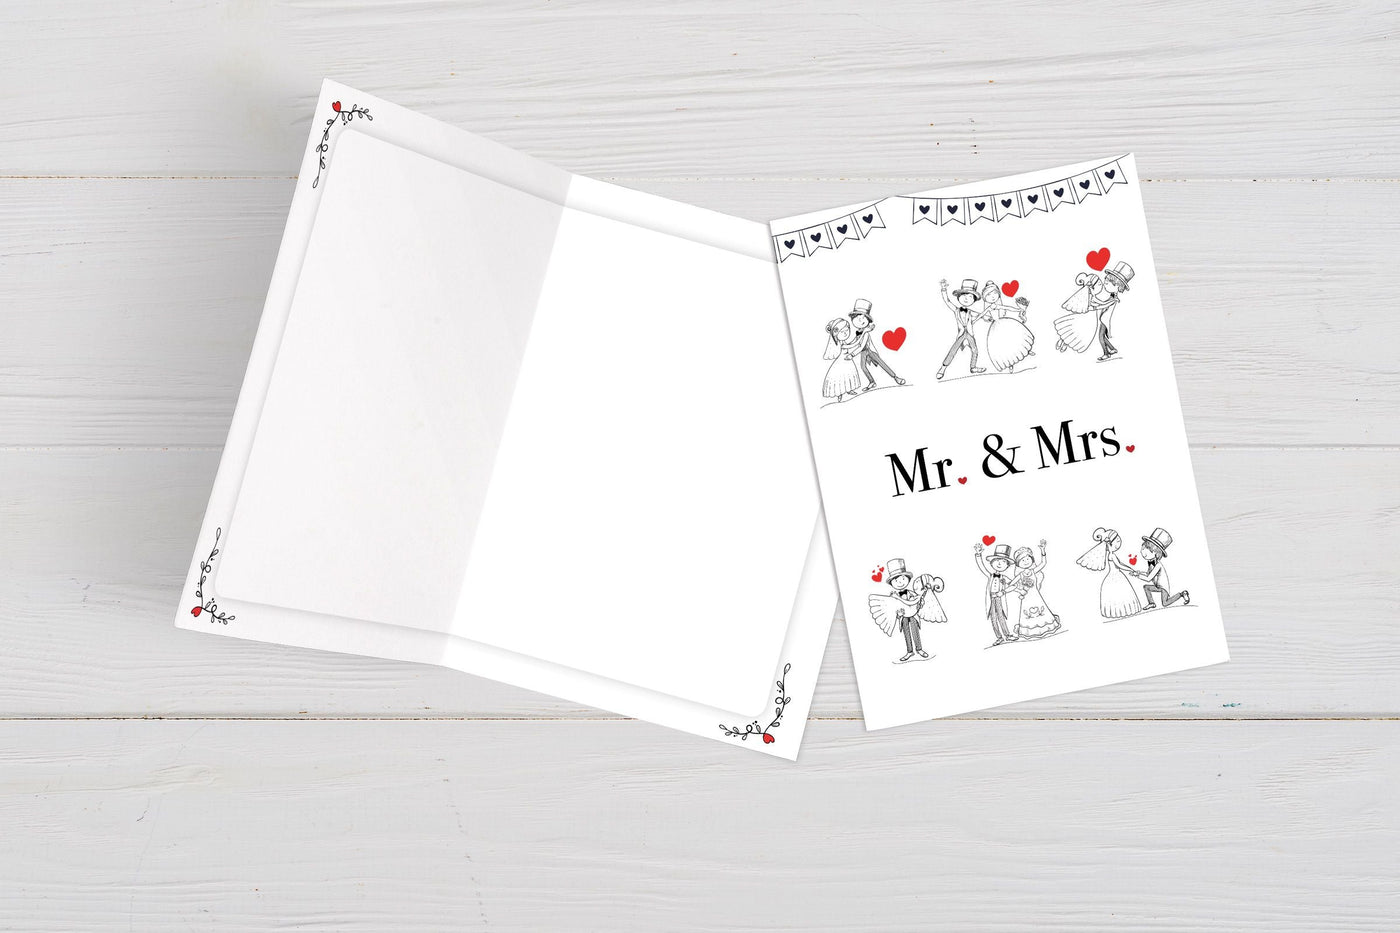 Bild: Hochzeitskarte - Grußkarte zur Hochzeit Mr. & Mrs. Geschenkidee